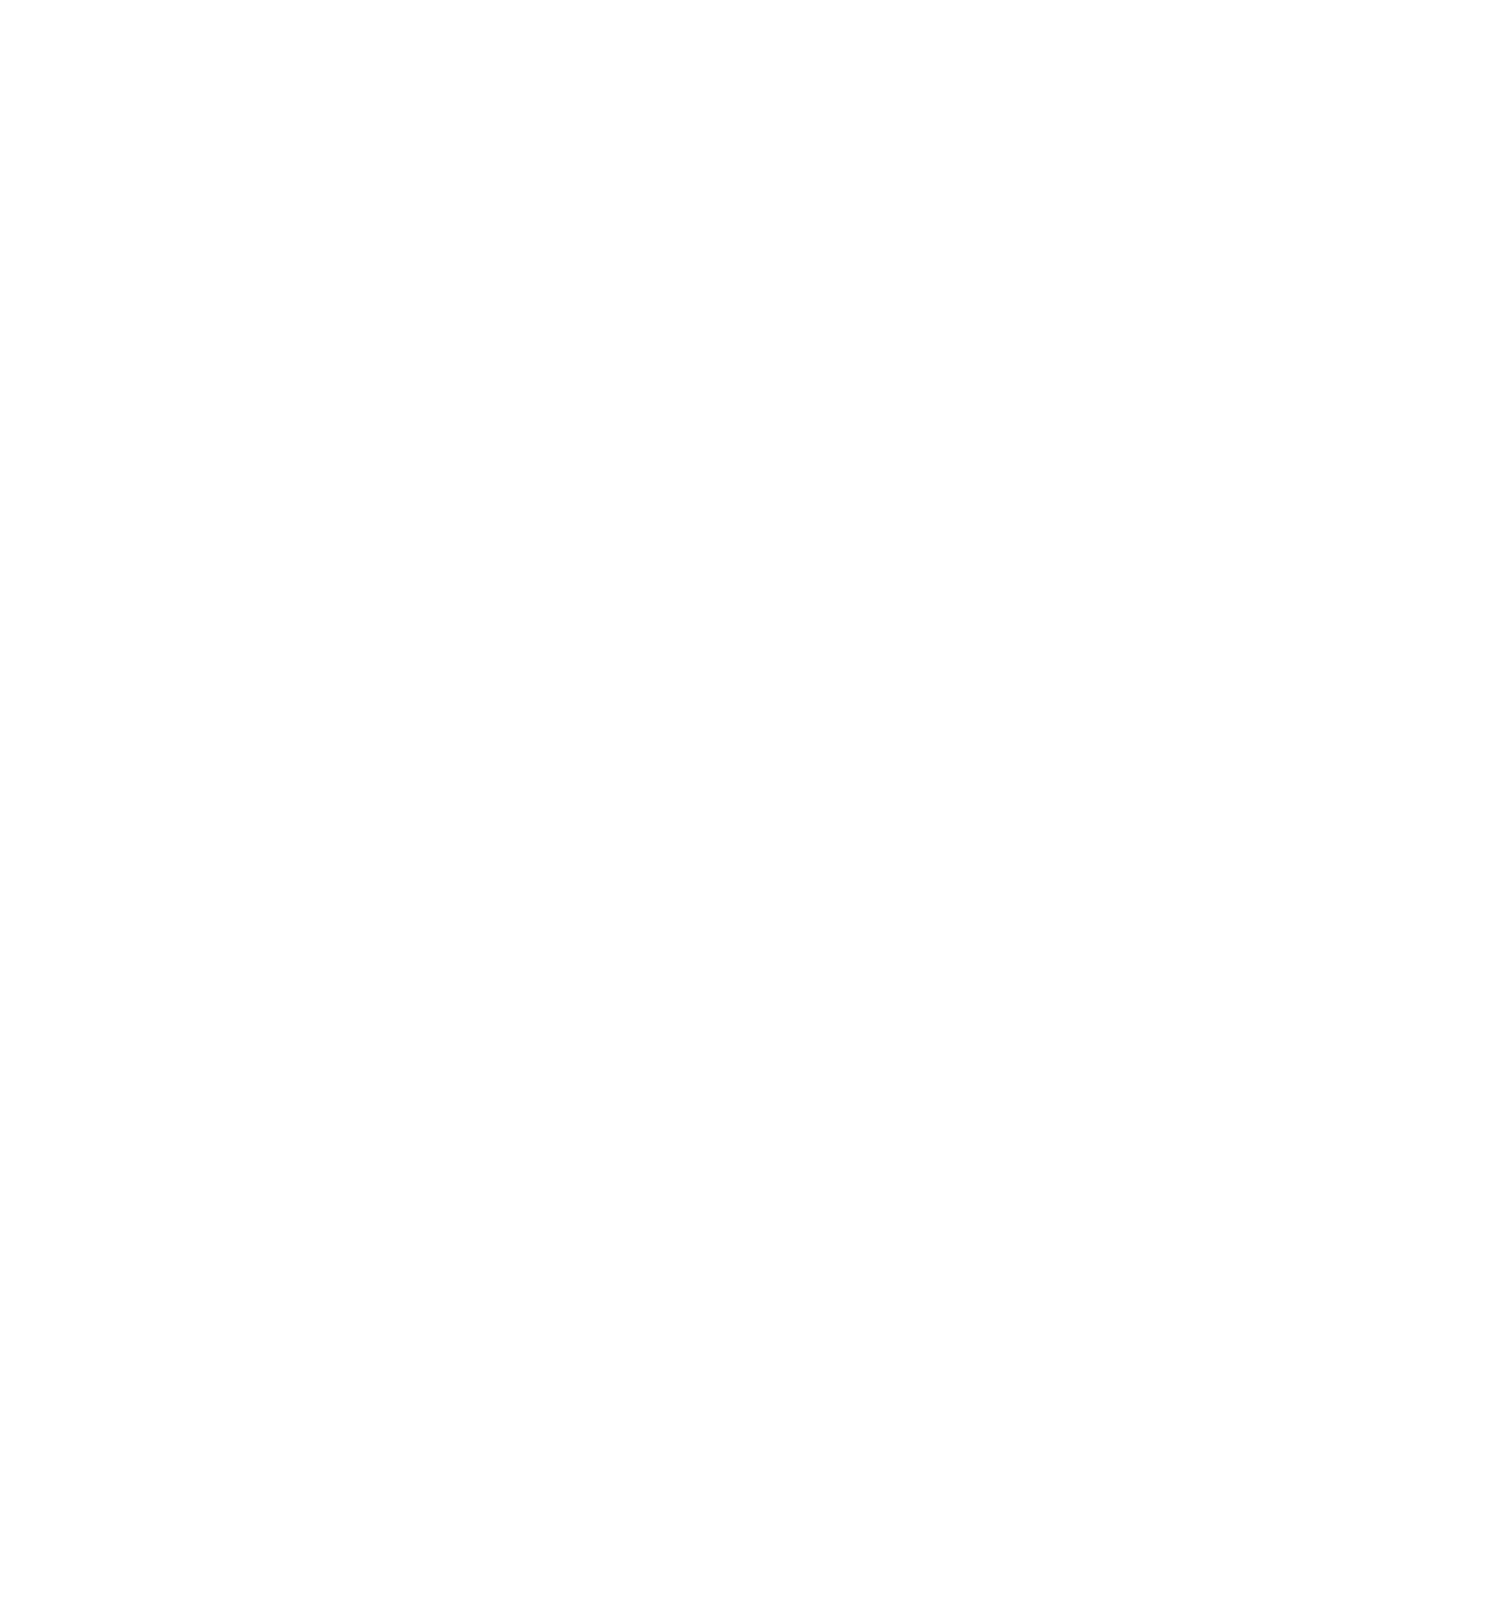 At the Ranch